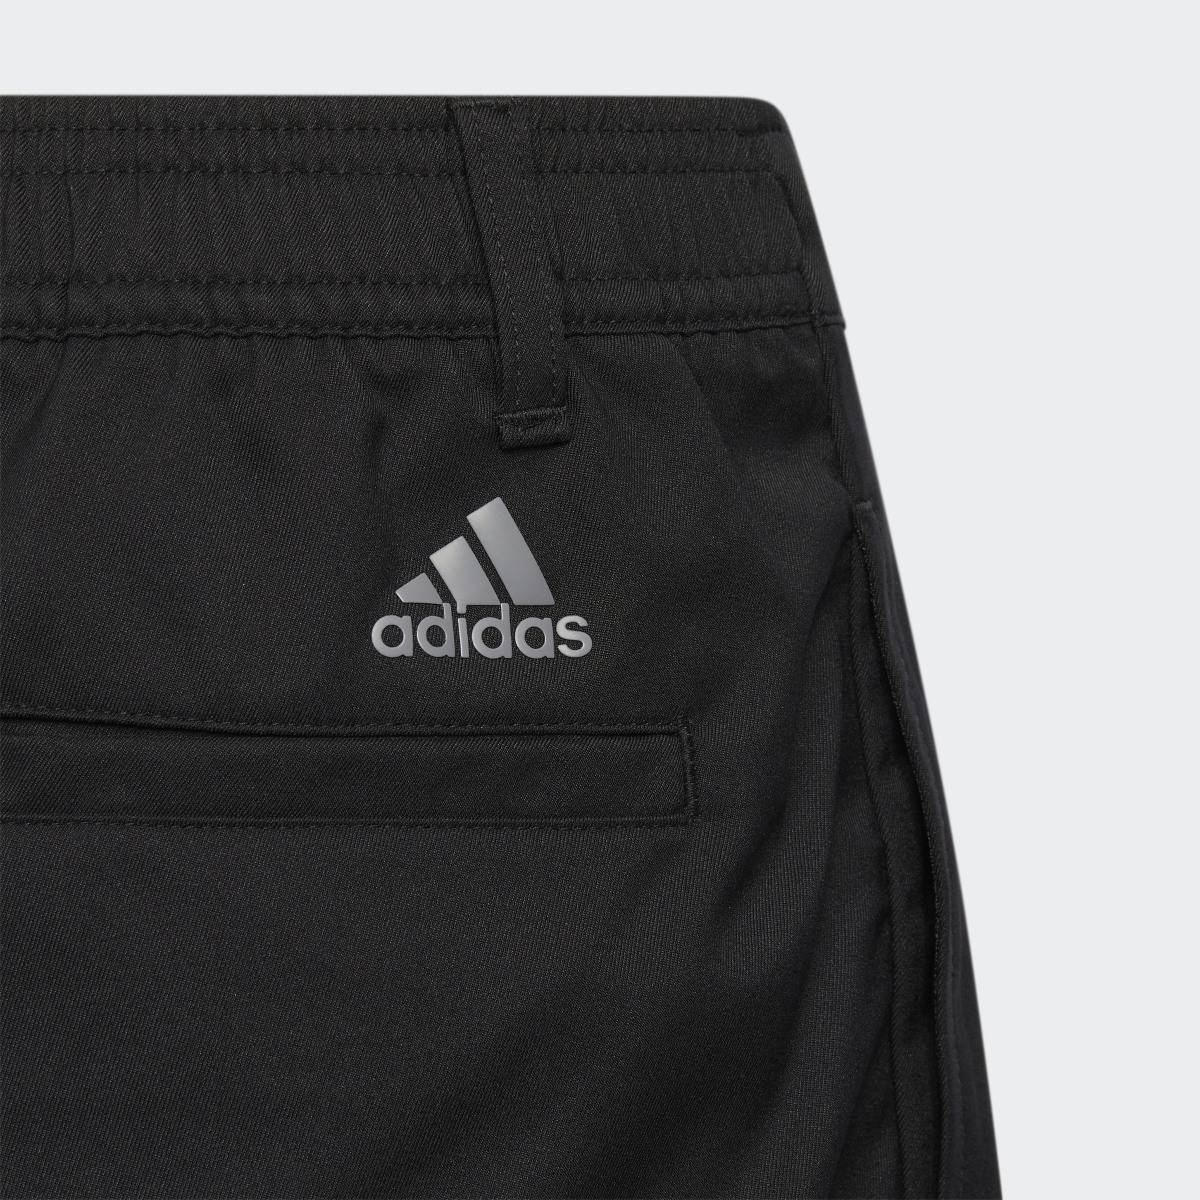 Adidas Ultimate365 Adjustable Golf Pants. 5